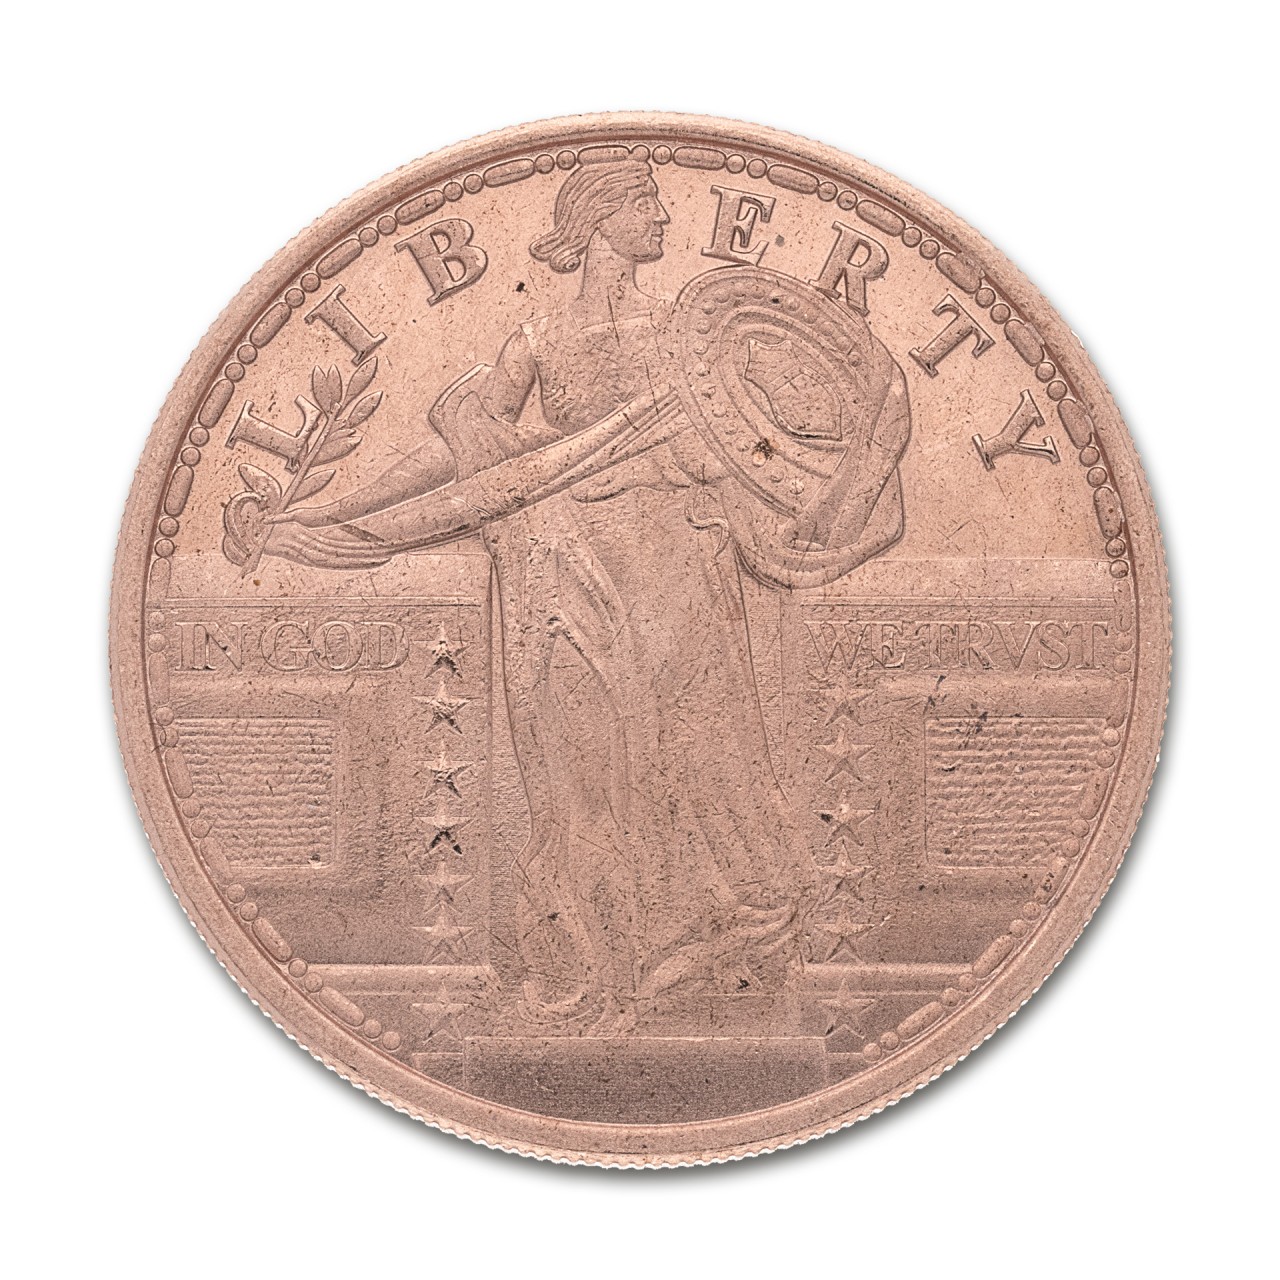 2019  LIBERTY OR DEATH  Silver shield 1 oz Copper Round Coin 